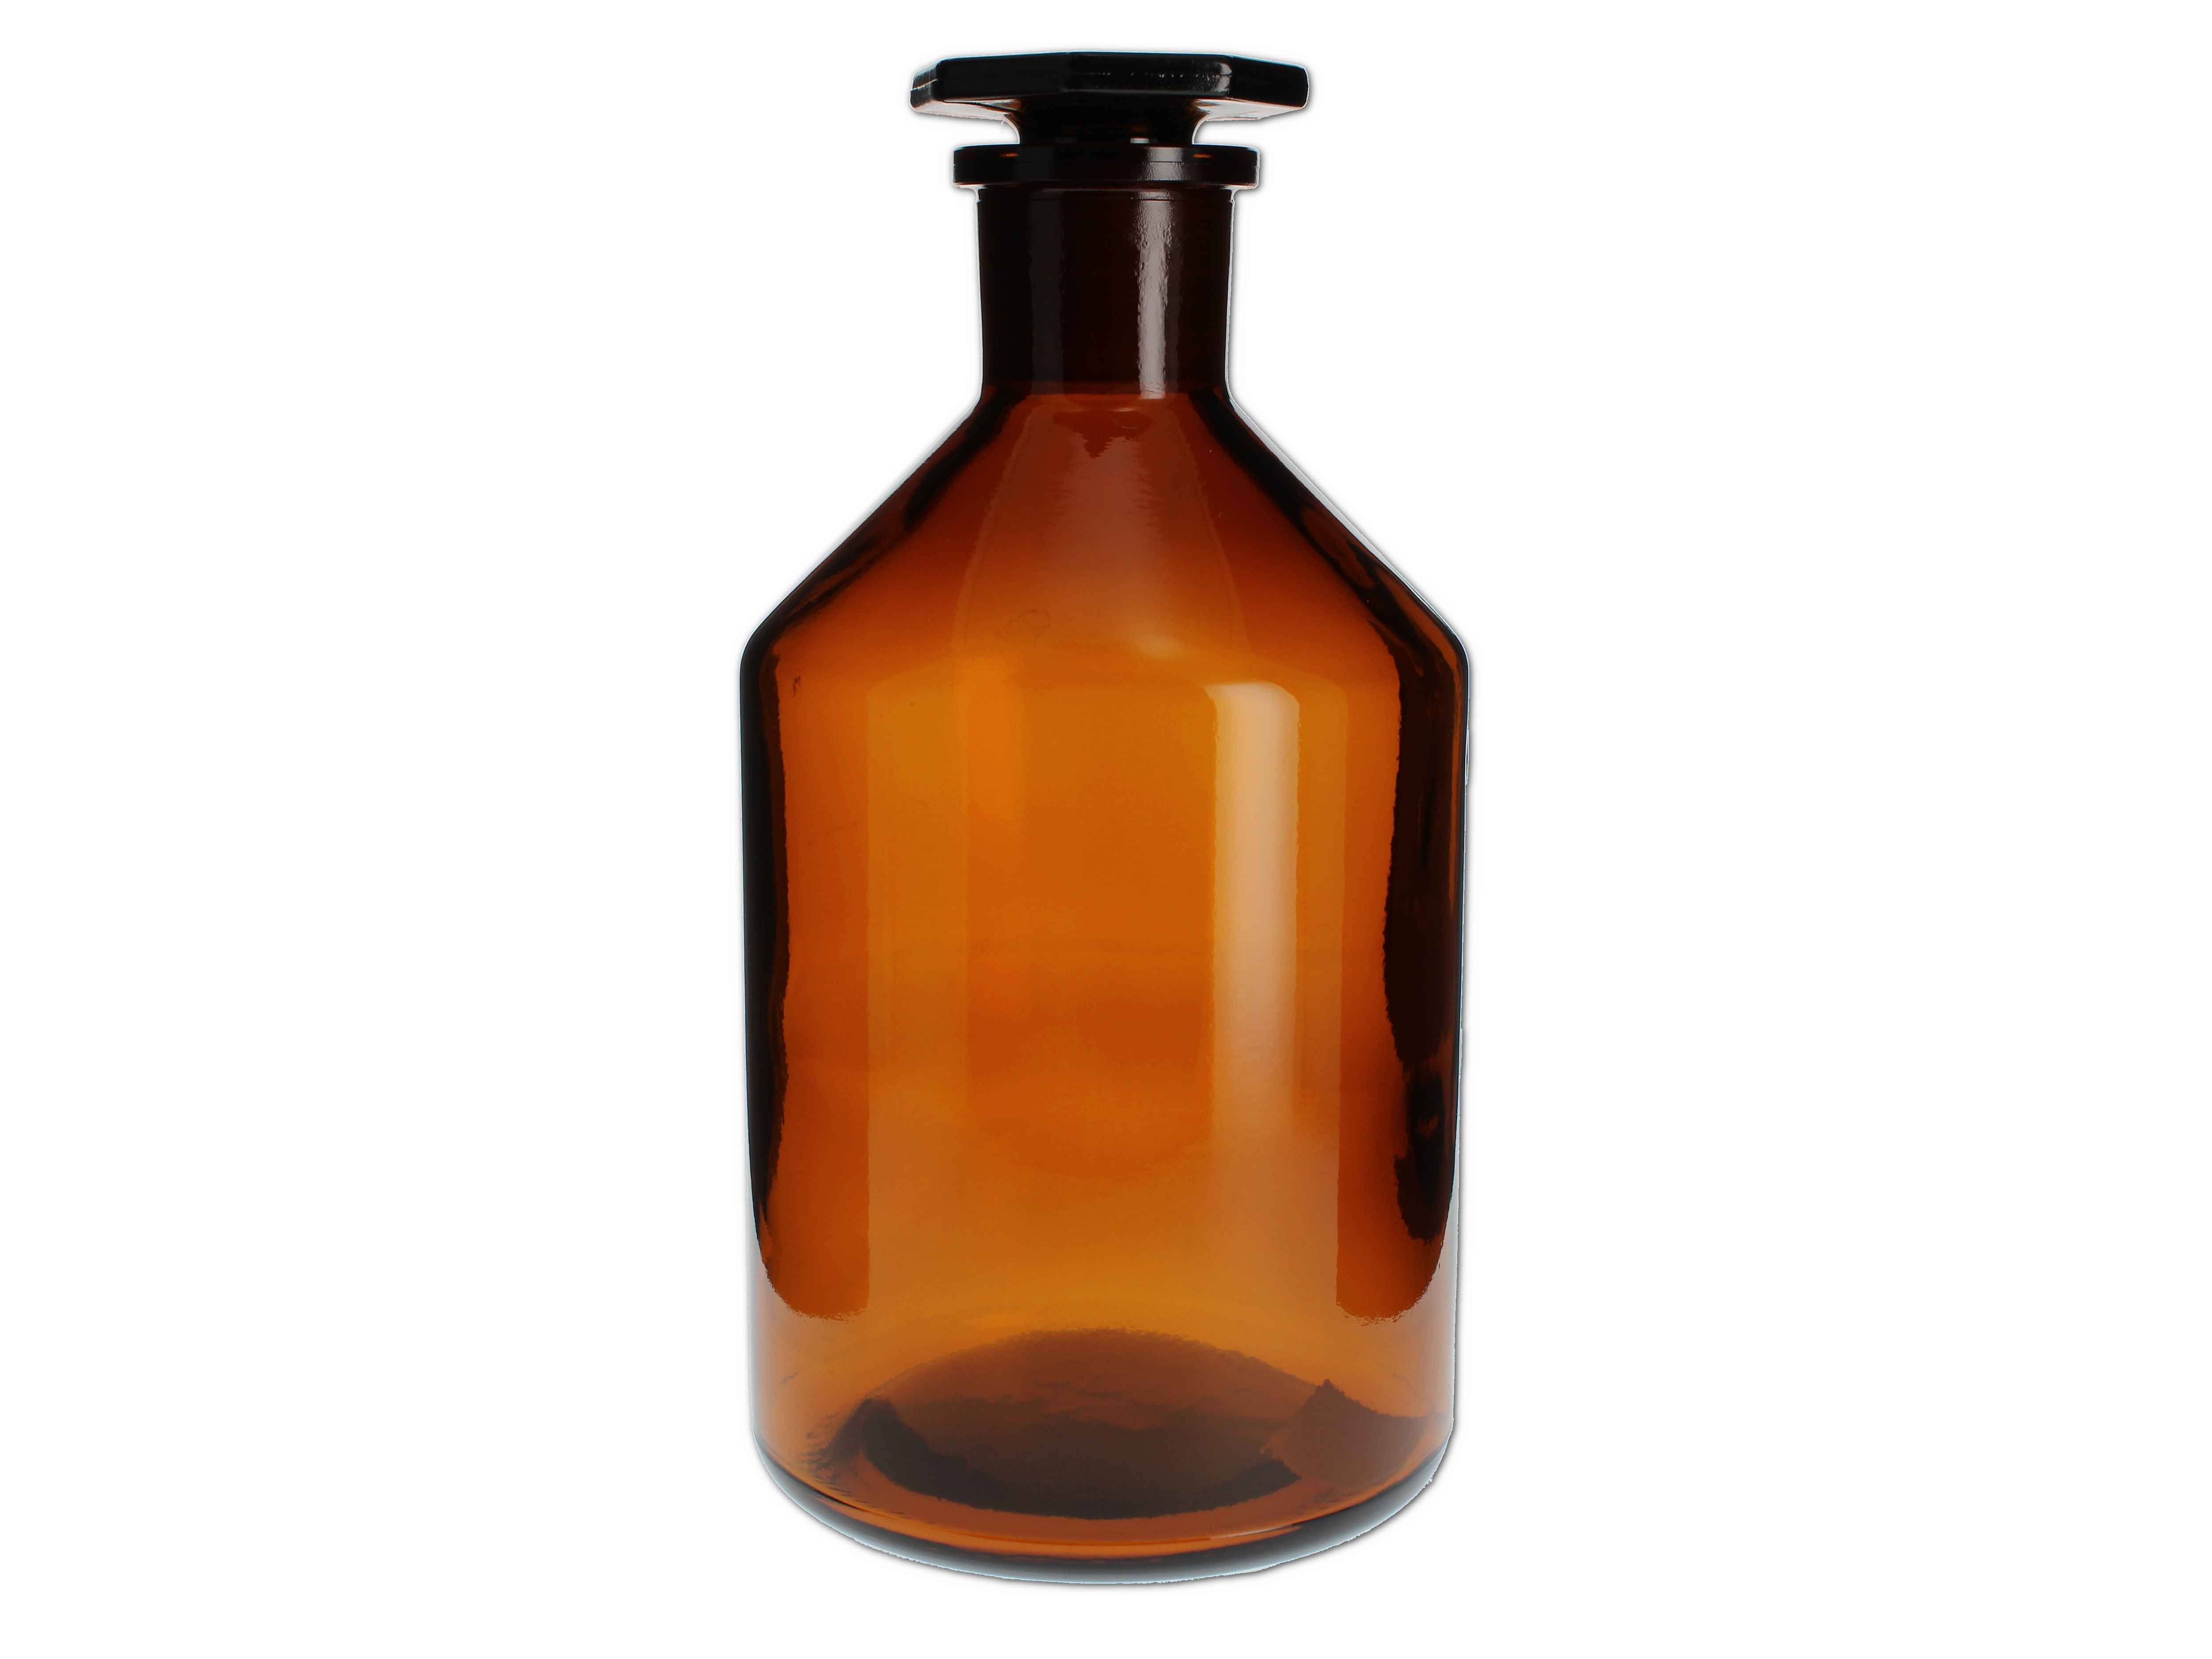    Standflasche braun mit Glasstopfen - 1000ML